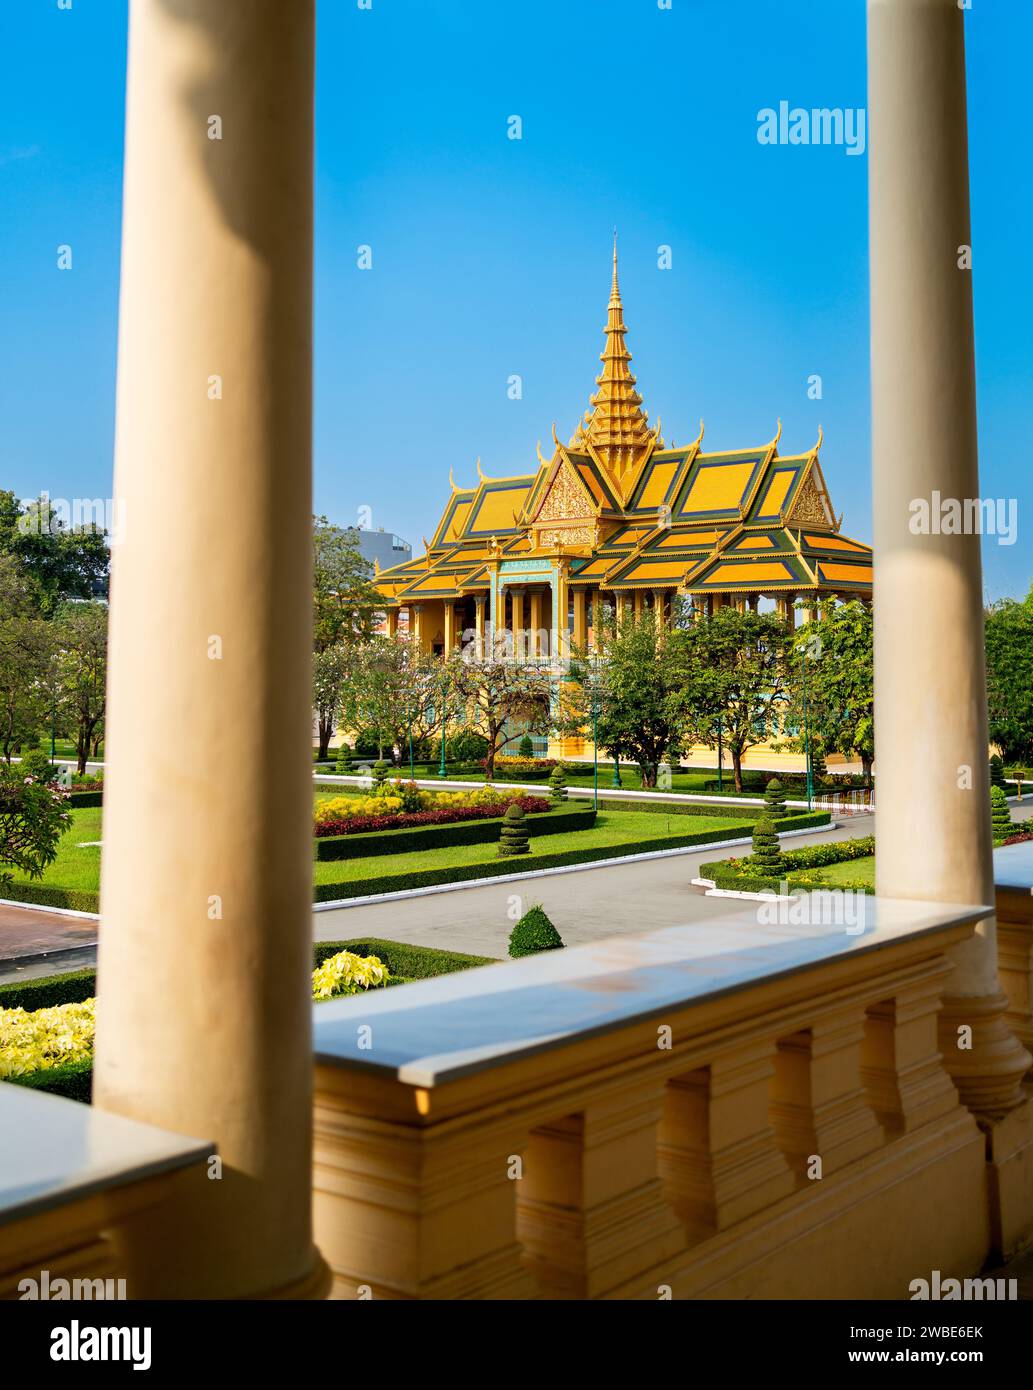 Phnom Penh, Kambodscha. Königspalast, Mondscheinpavillon. Reise und Tourismus in Asien. Wahrzeichen der buddhistischen Kultur. Touristenattraktion in der Hauptstadt. Stockfoto